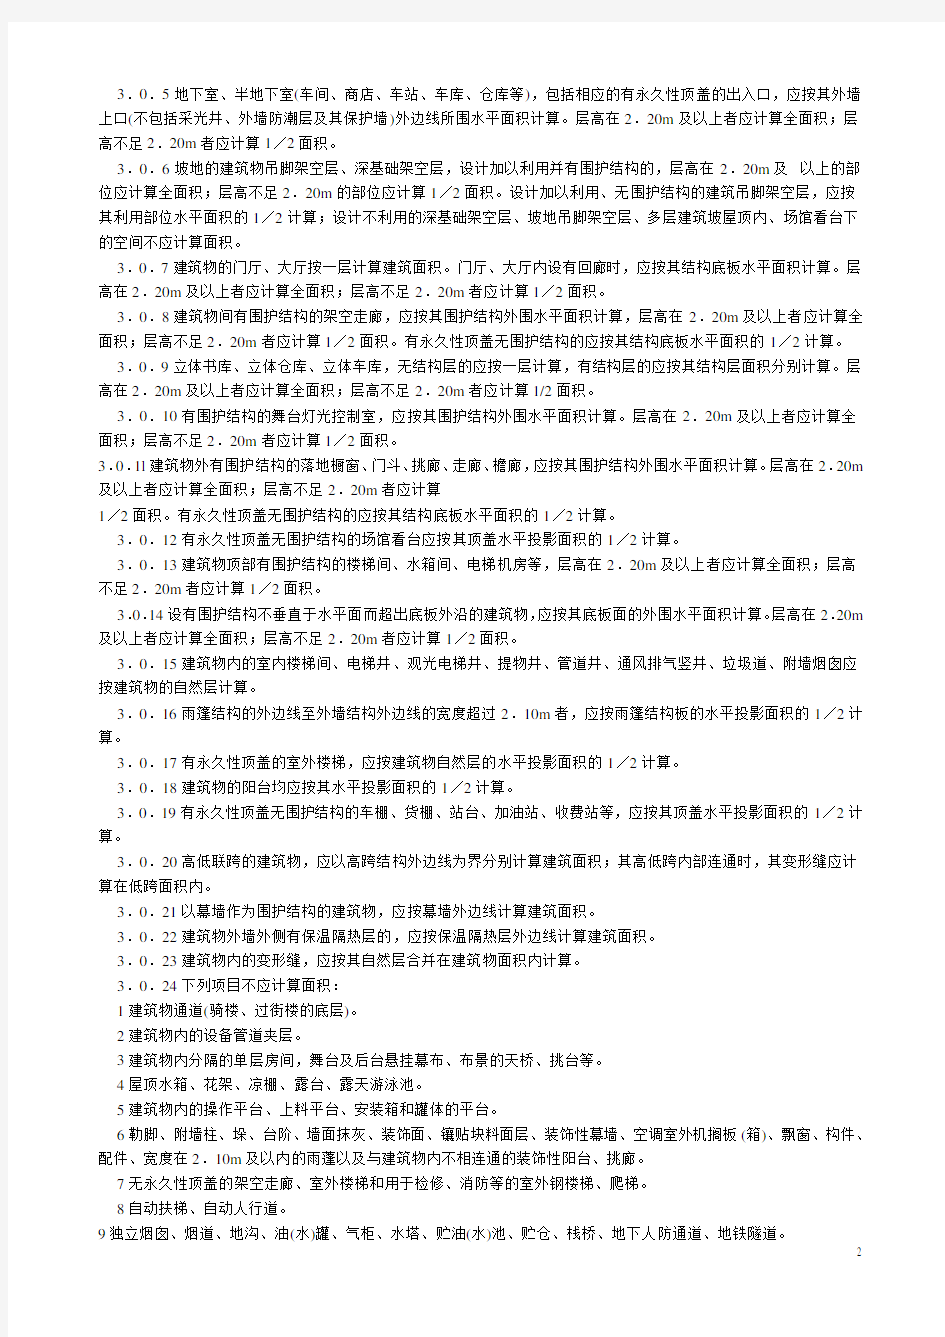 湖南省2006消耗量定额标准(建筑装饰工程工程量计算规则)